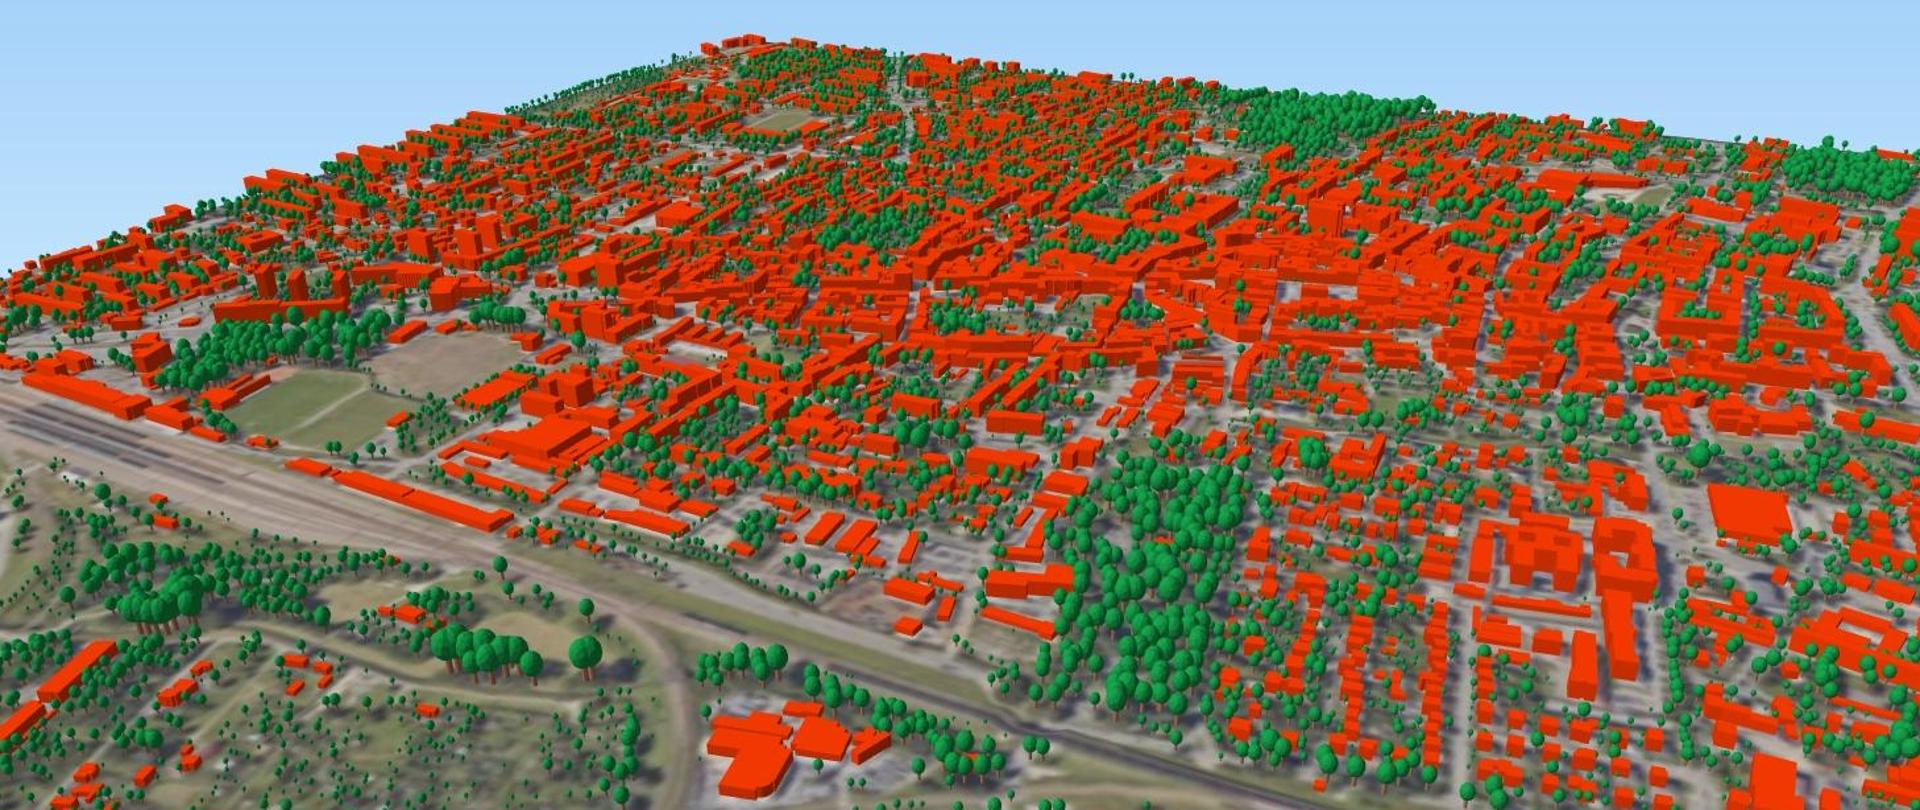 zrzut ekranu przedstawiający wygenerowane modele 3D drzew wraz z modelami 3D budynków.